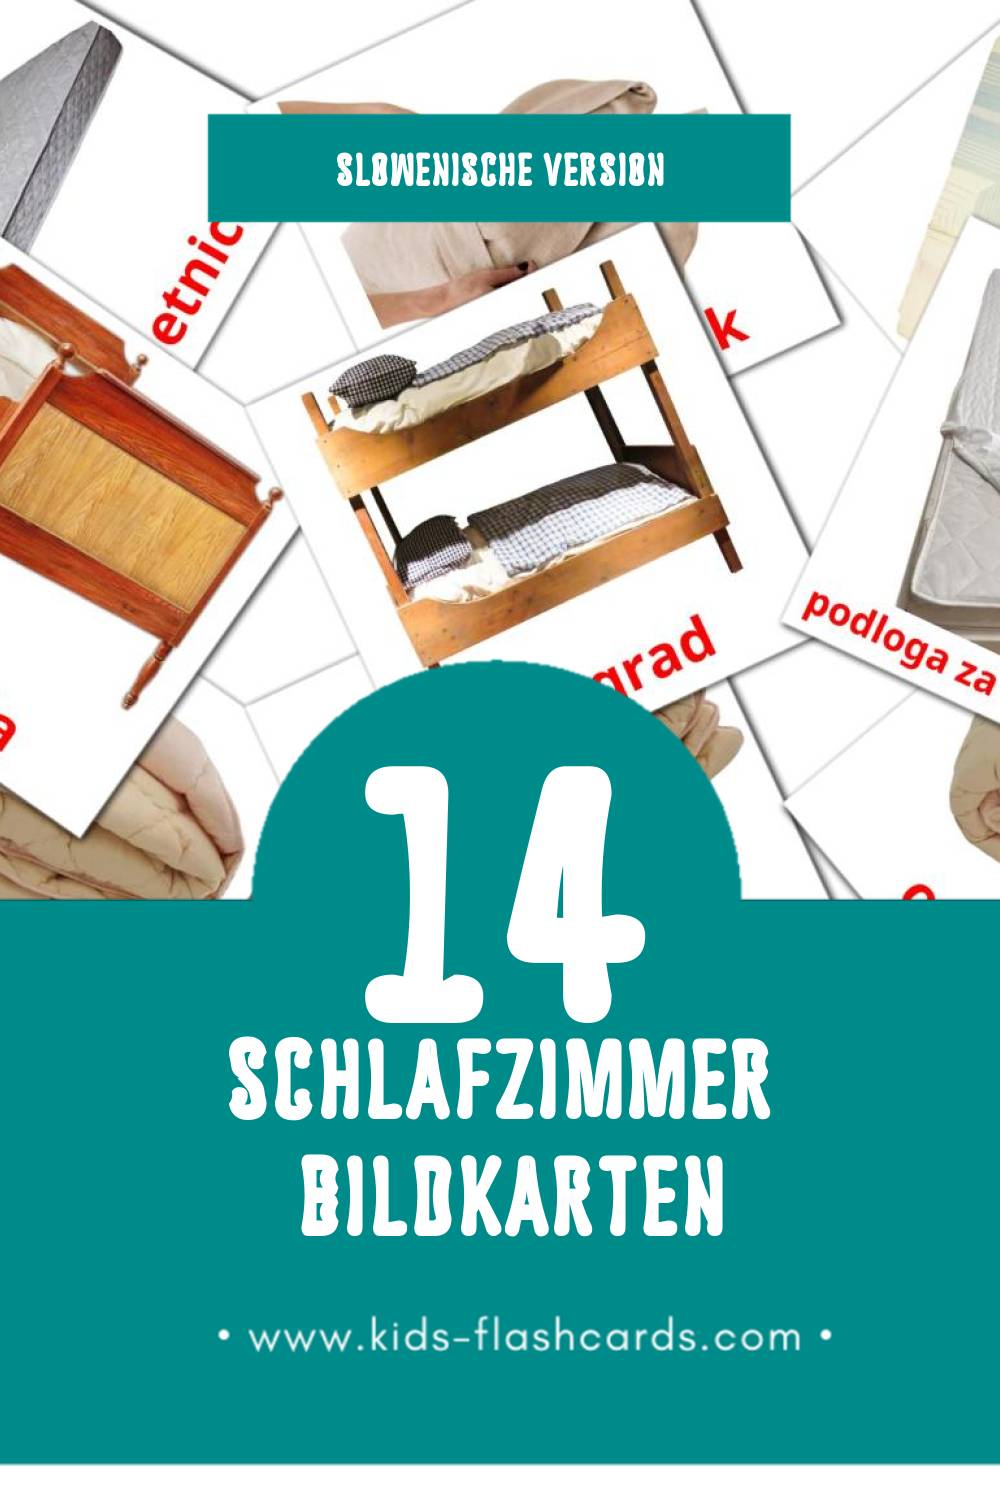 Visual Spalnica Flashcards für Kleinkinder (14 Karten in Slowenisch)